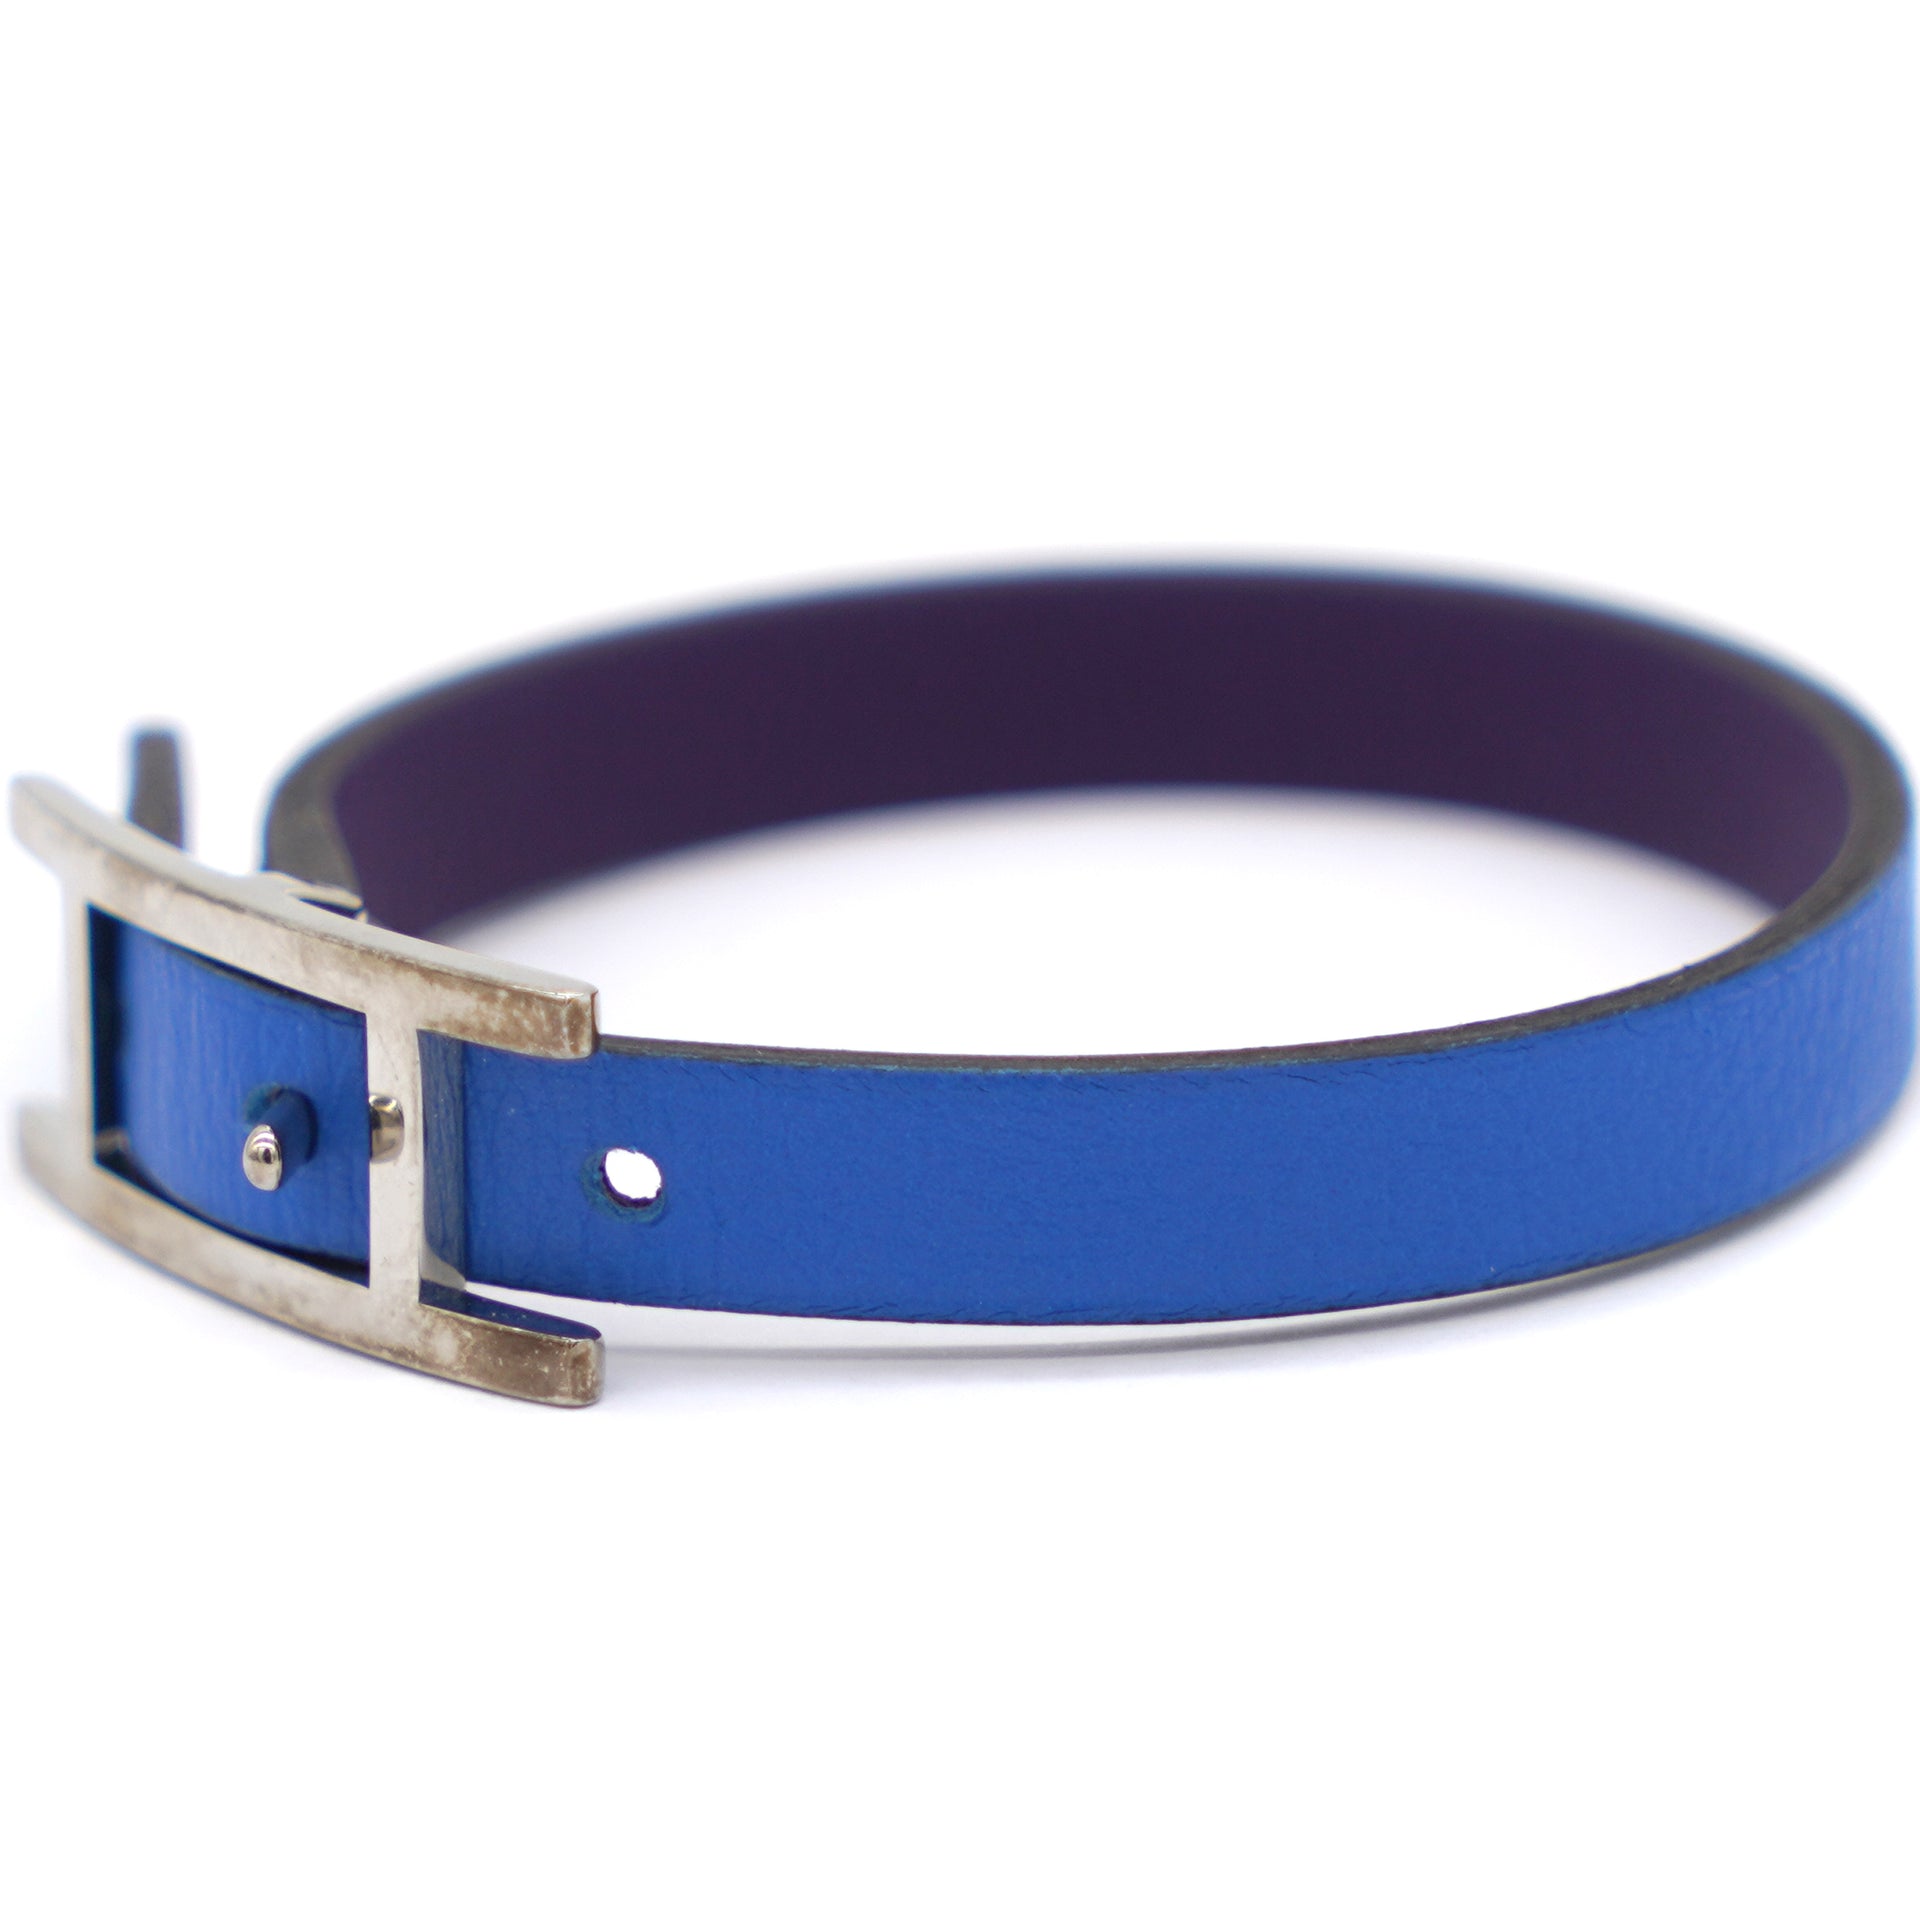 Behapi Bracelet Blue/Purple